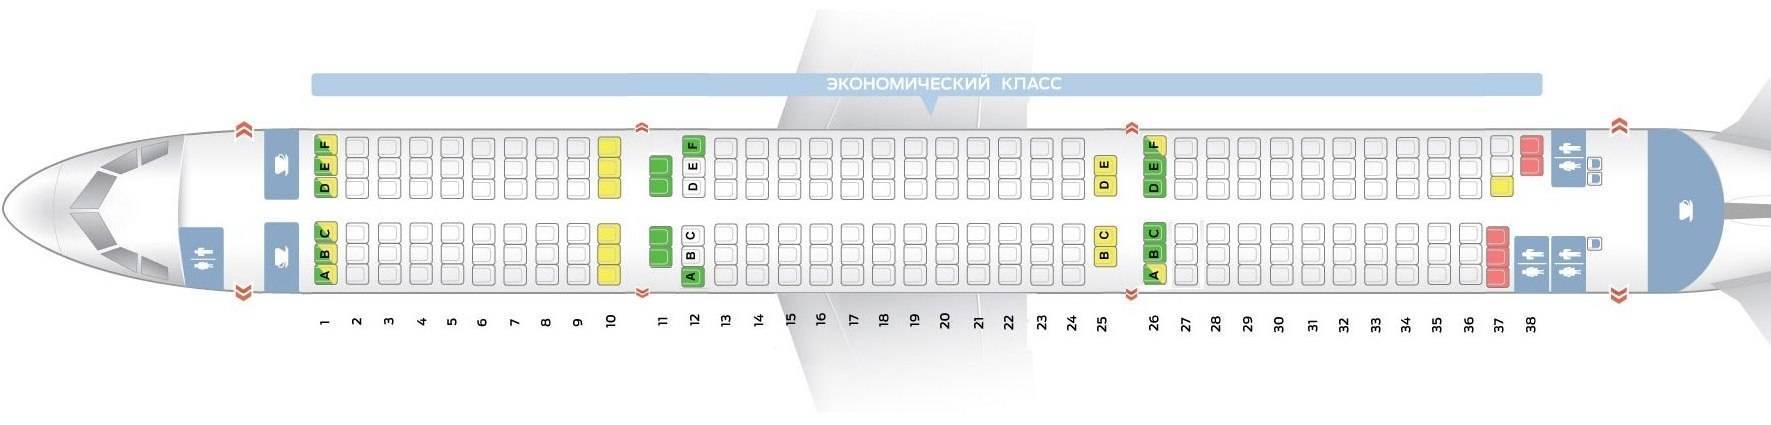 Схема салона аэробуса A321 (airbus industrie) — лучшие места